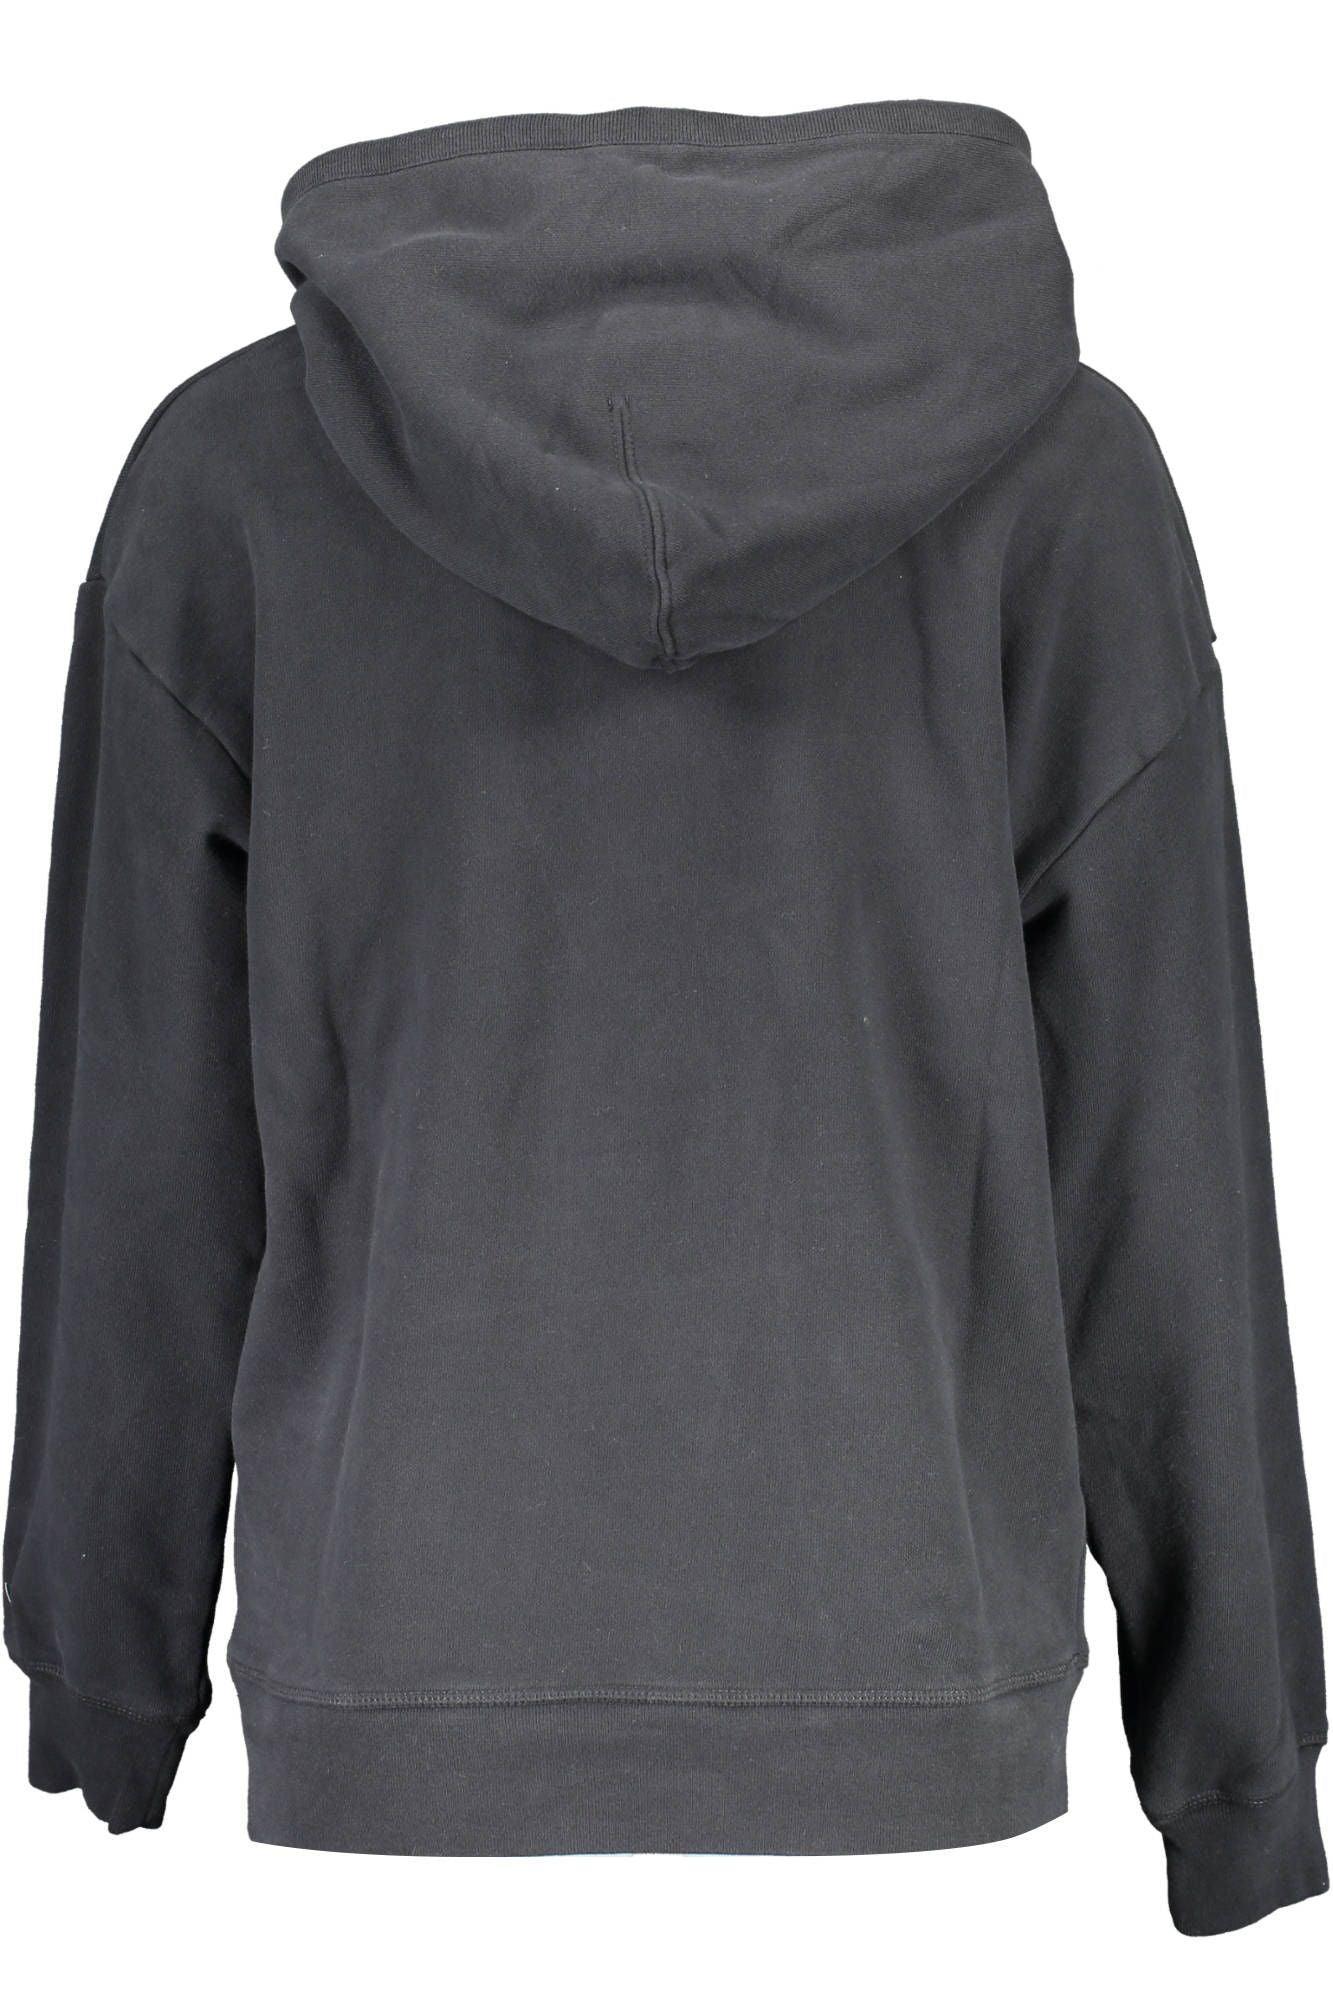 Levi's Chic Cozy Black Hooded Sweatshirt - PER.FASHION